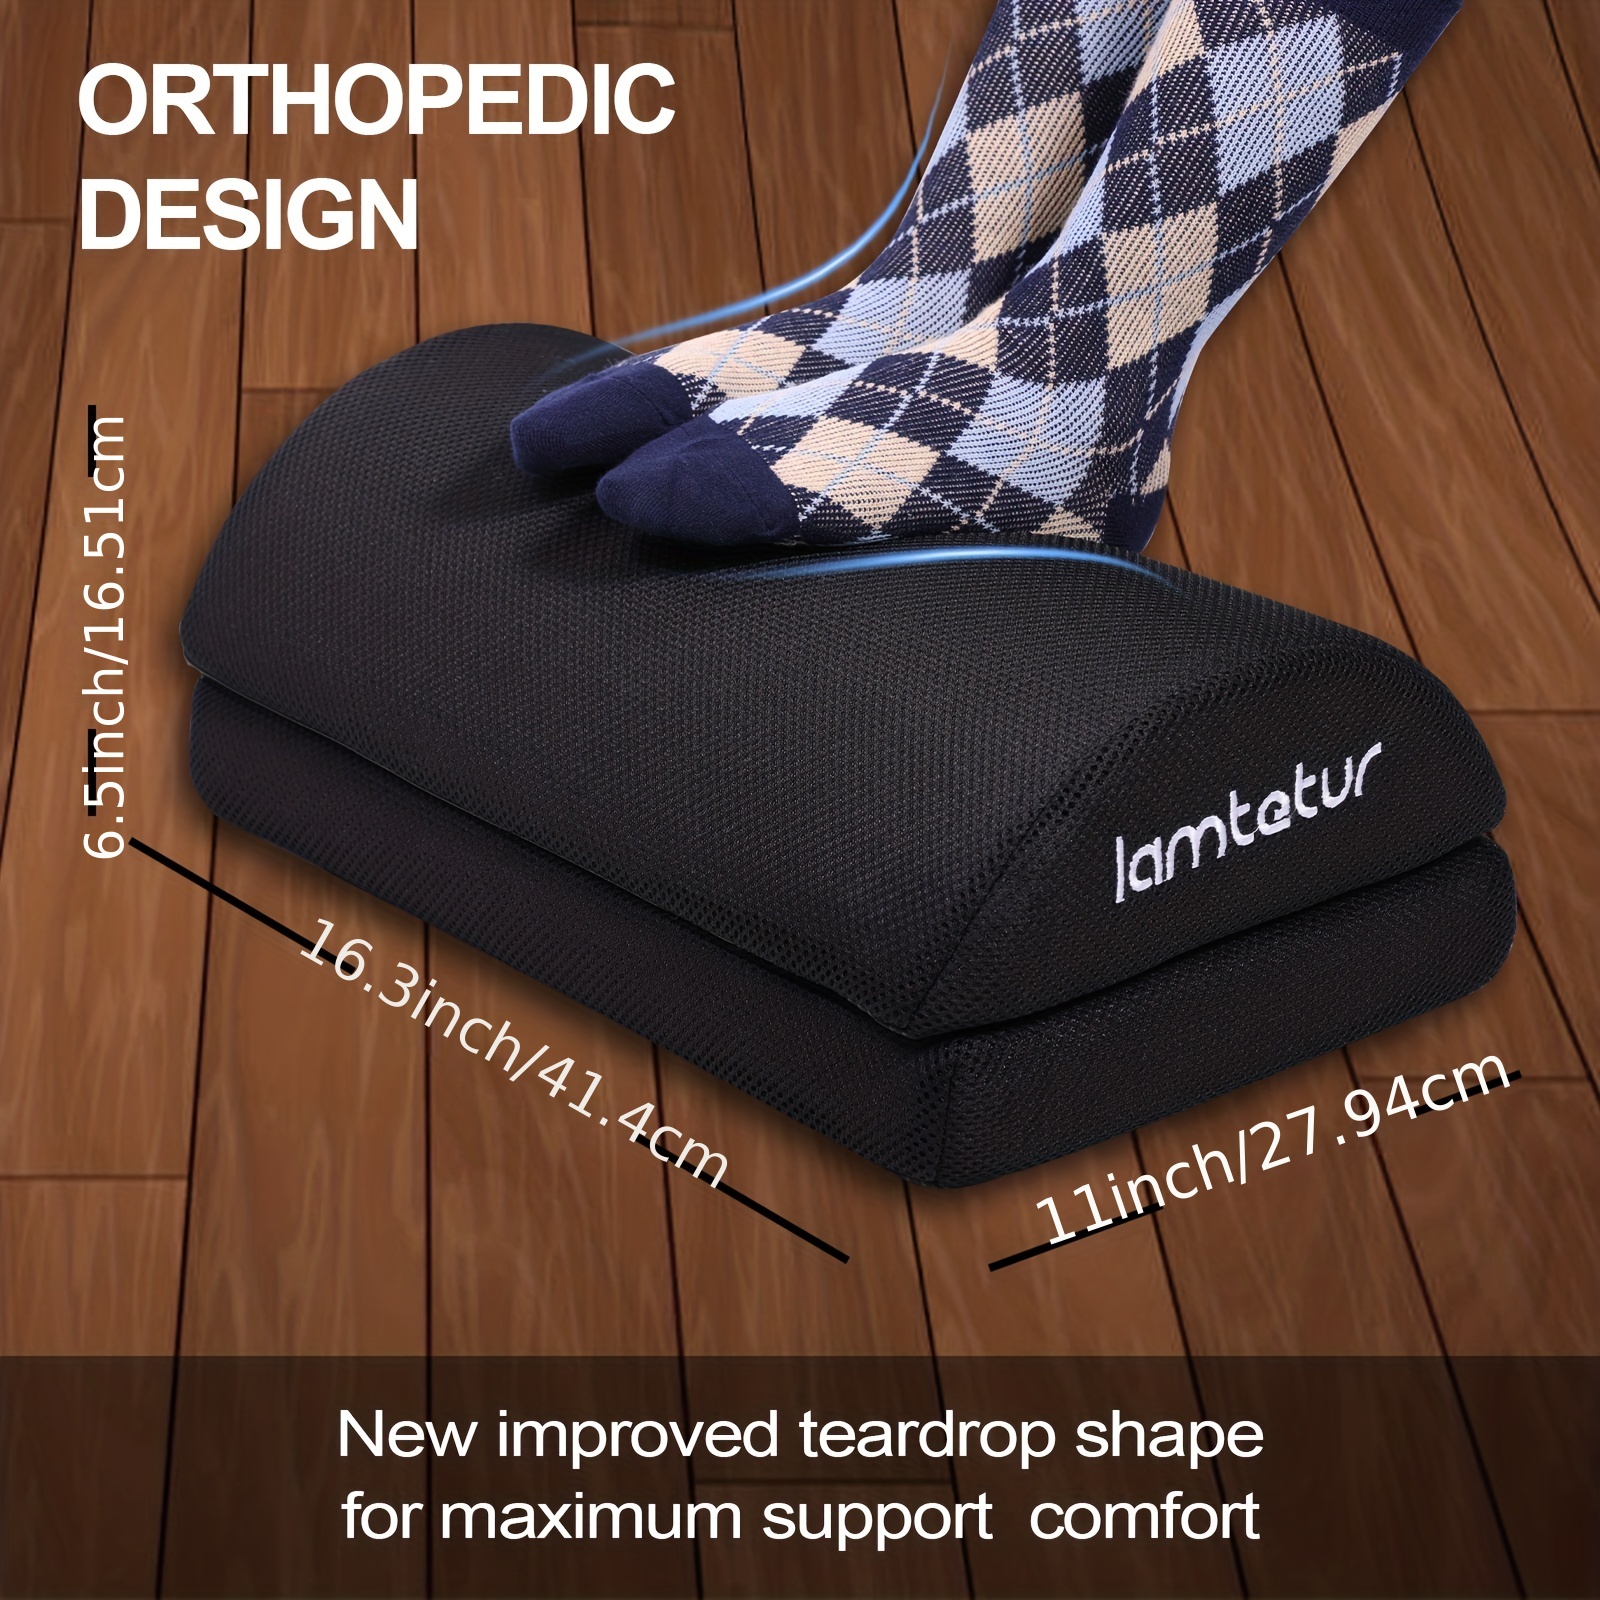 Ergonomic Design Adjustable Memory Foam Foot Rest Under Desk at